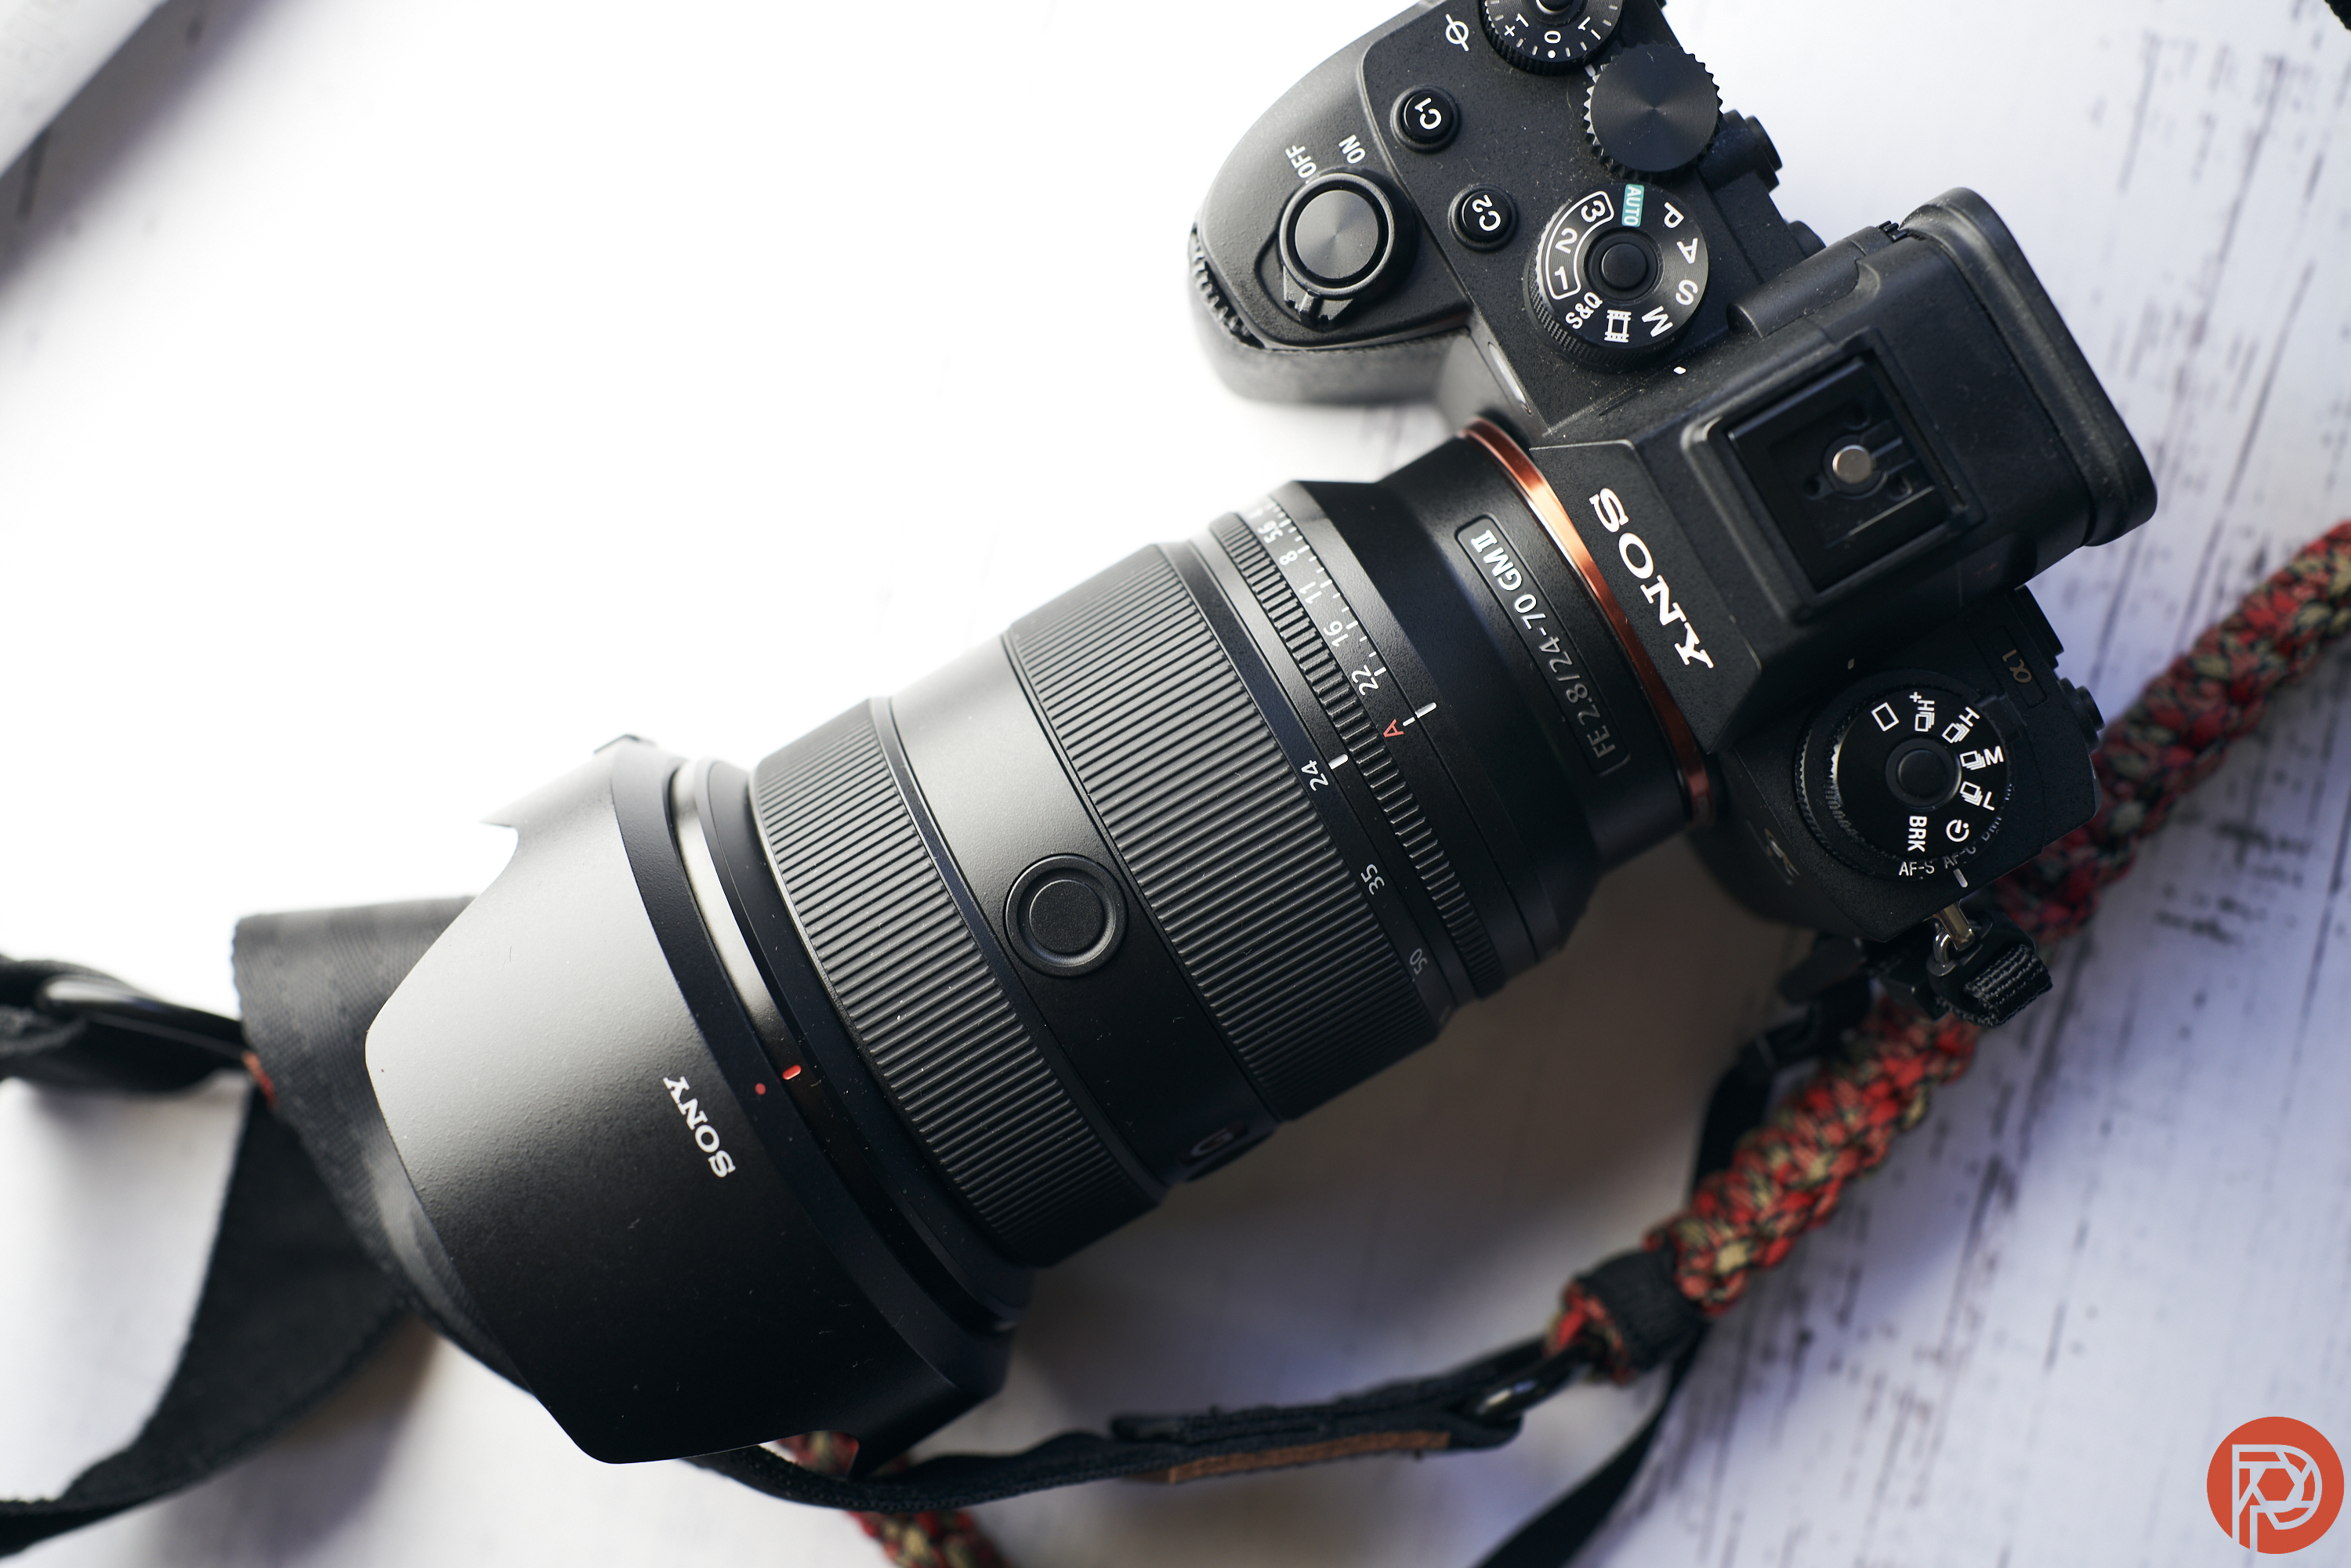 Sony FE 24-70mm f2.8 GM II Lens